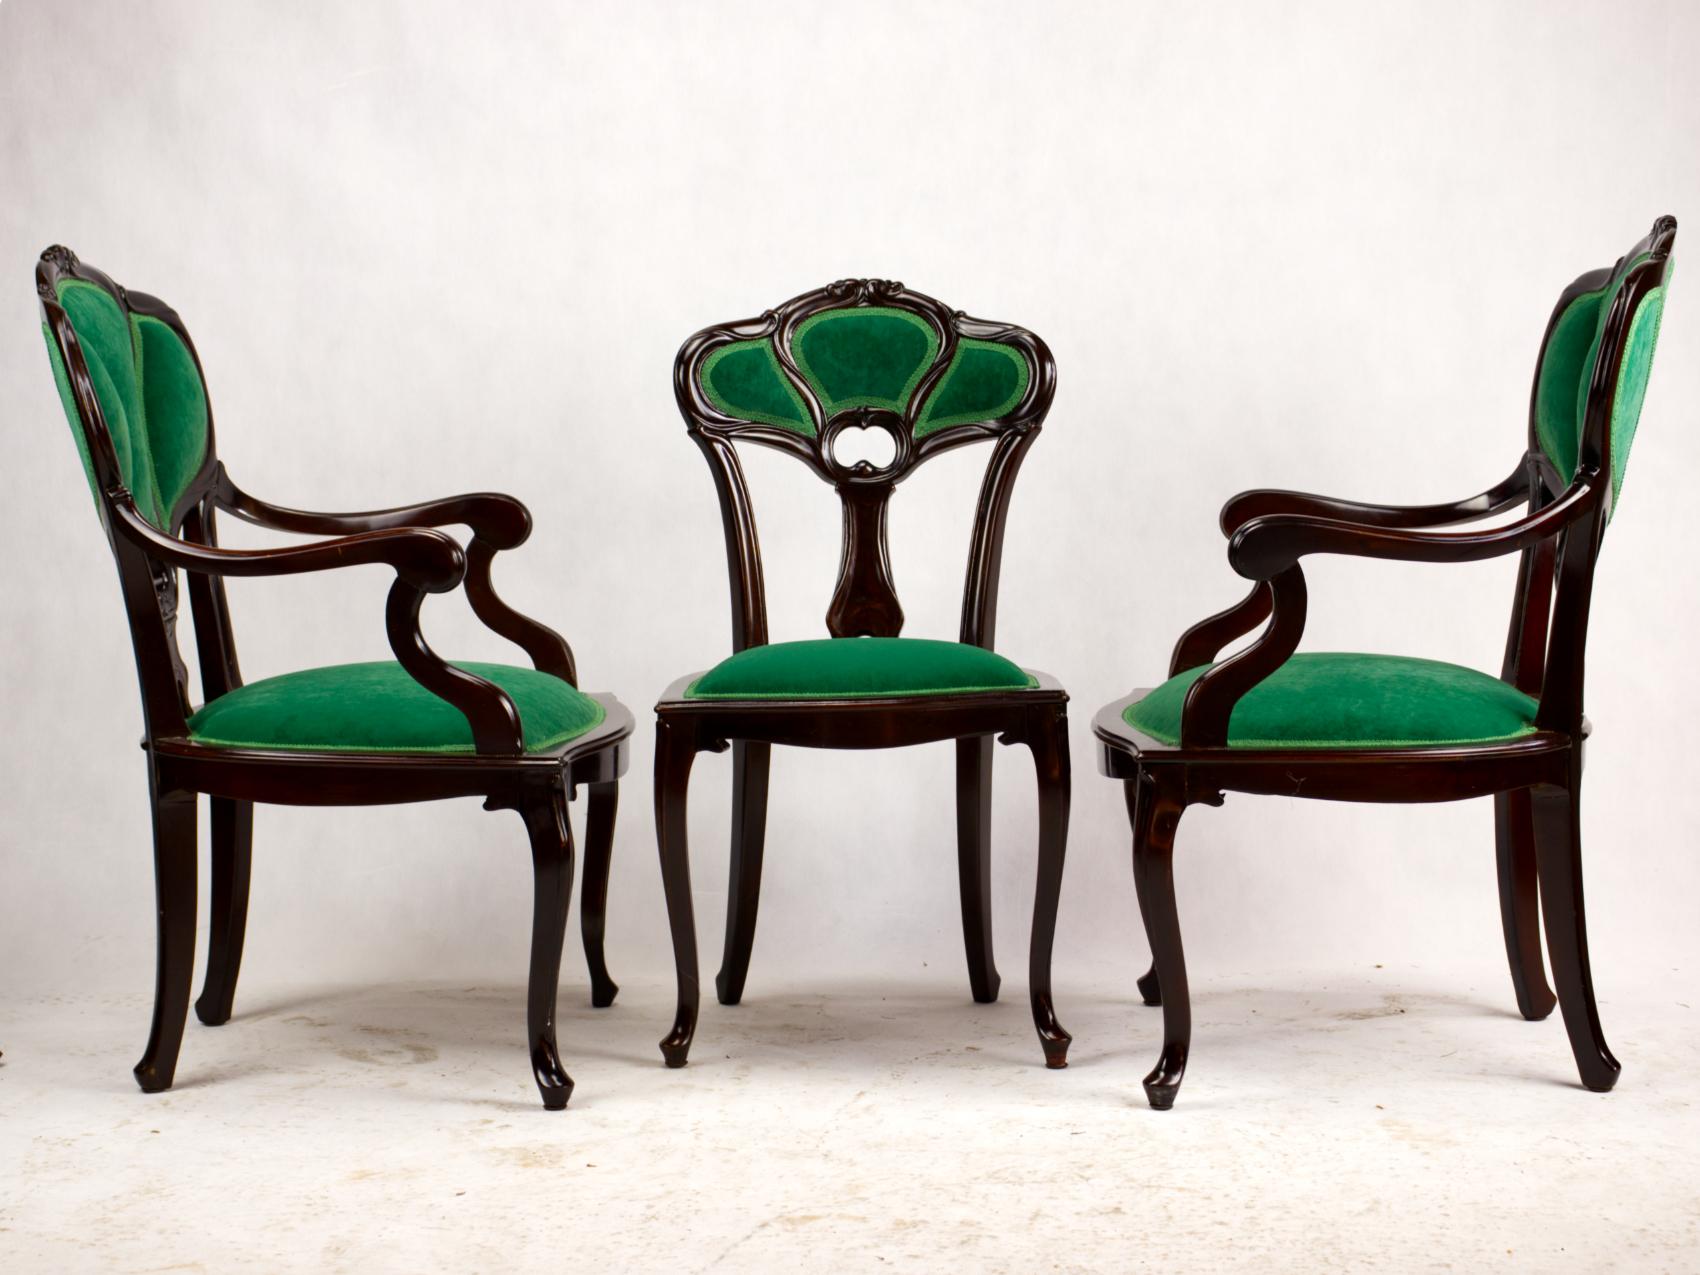 Ensemble de trois fauteuils Art Nouveau début 20ème siècle. Châssis de chaise en bois fruitier magnifiquement sculpté, avec sièges et dossiers rembourrés en forme de trois feuilles sur des pieds cabriole. Les chaises sont entièrement rénovées avec